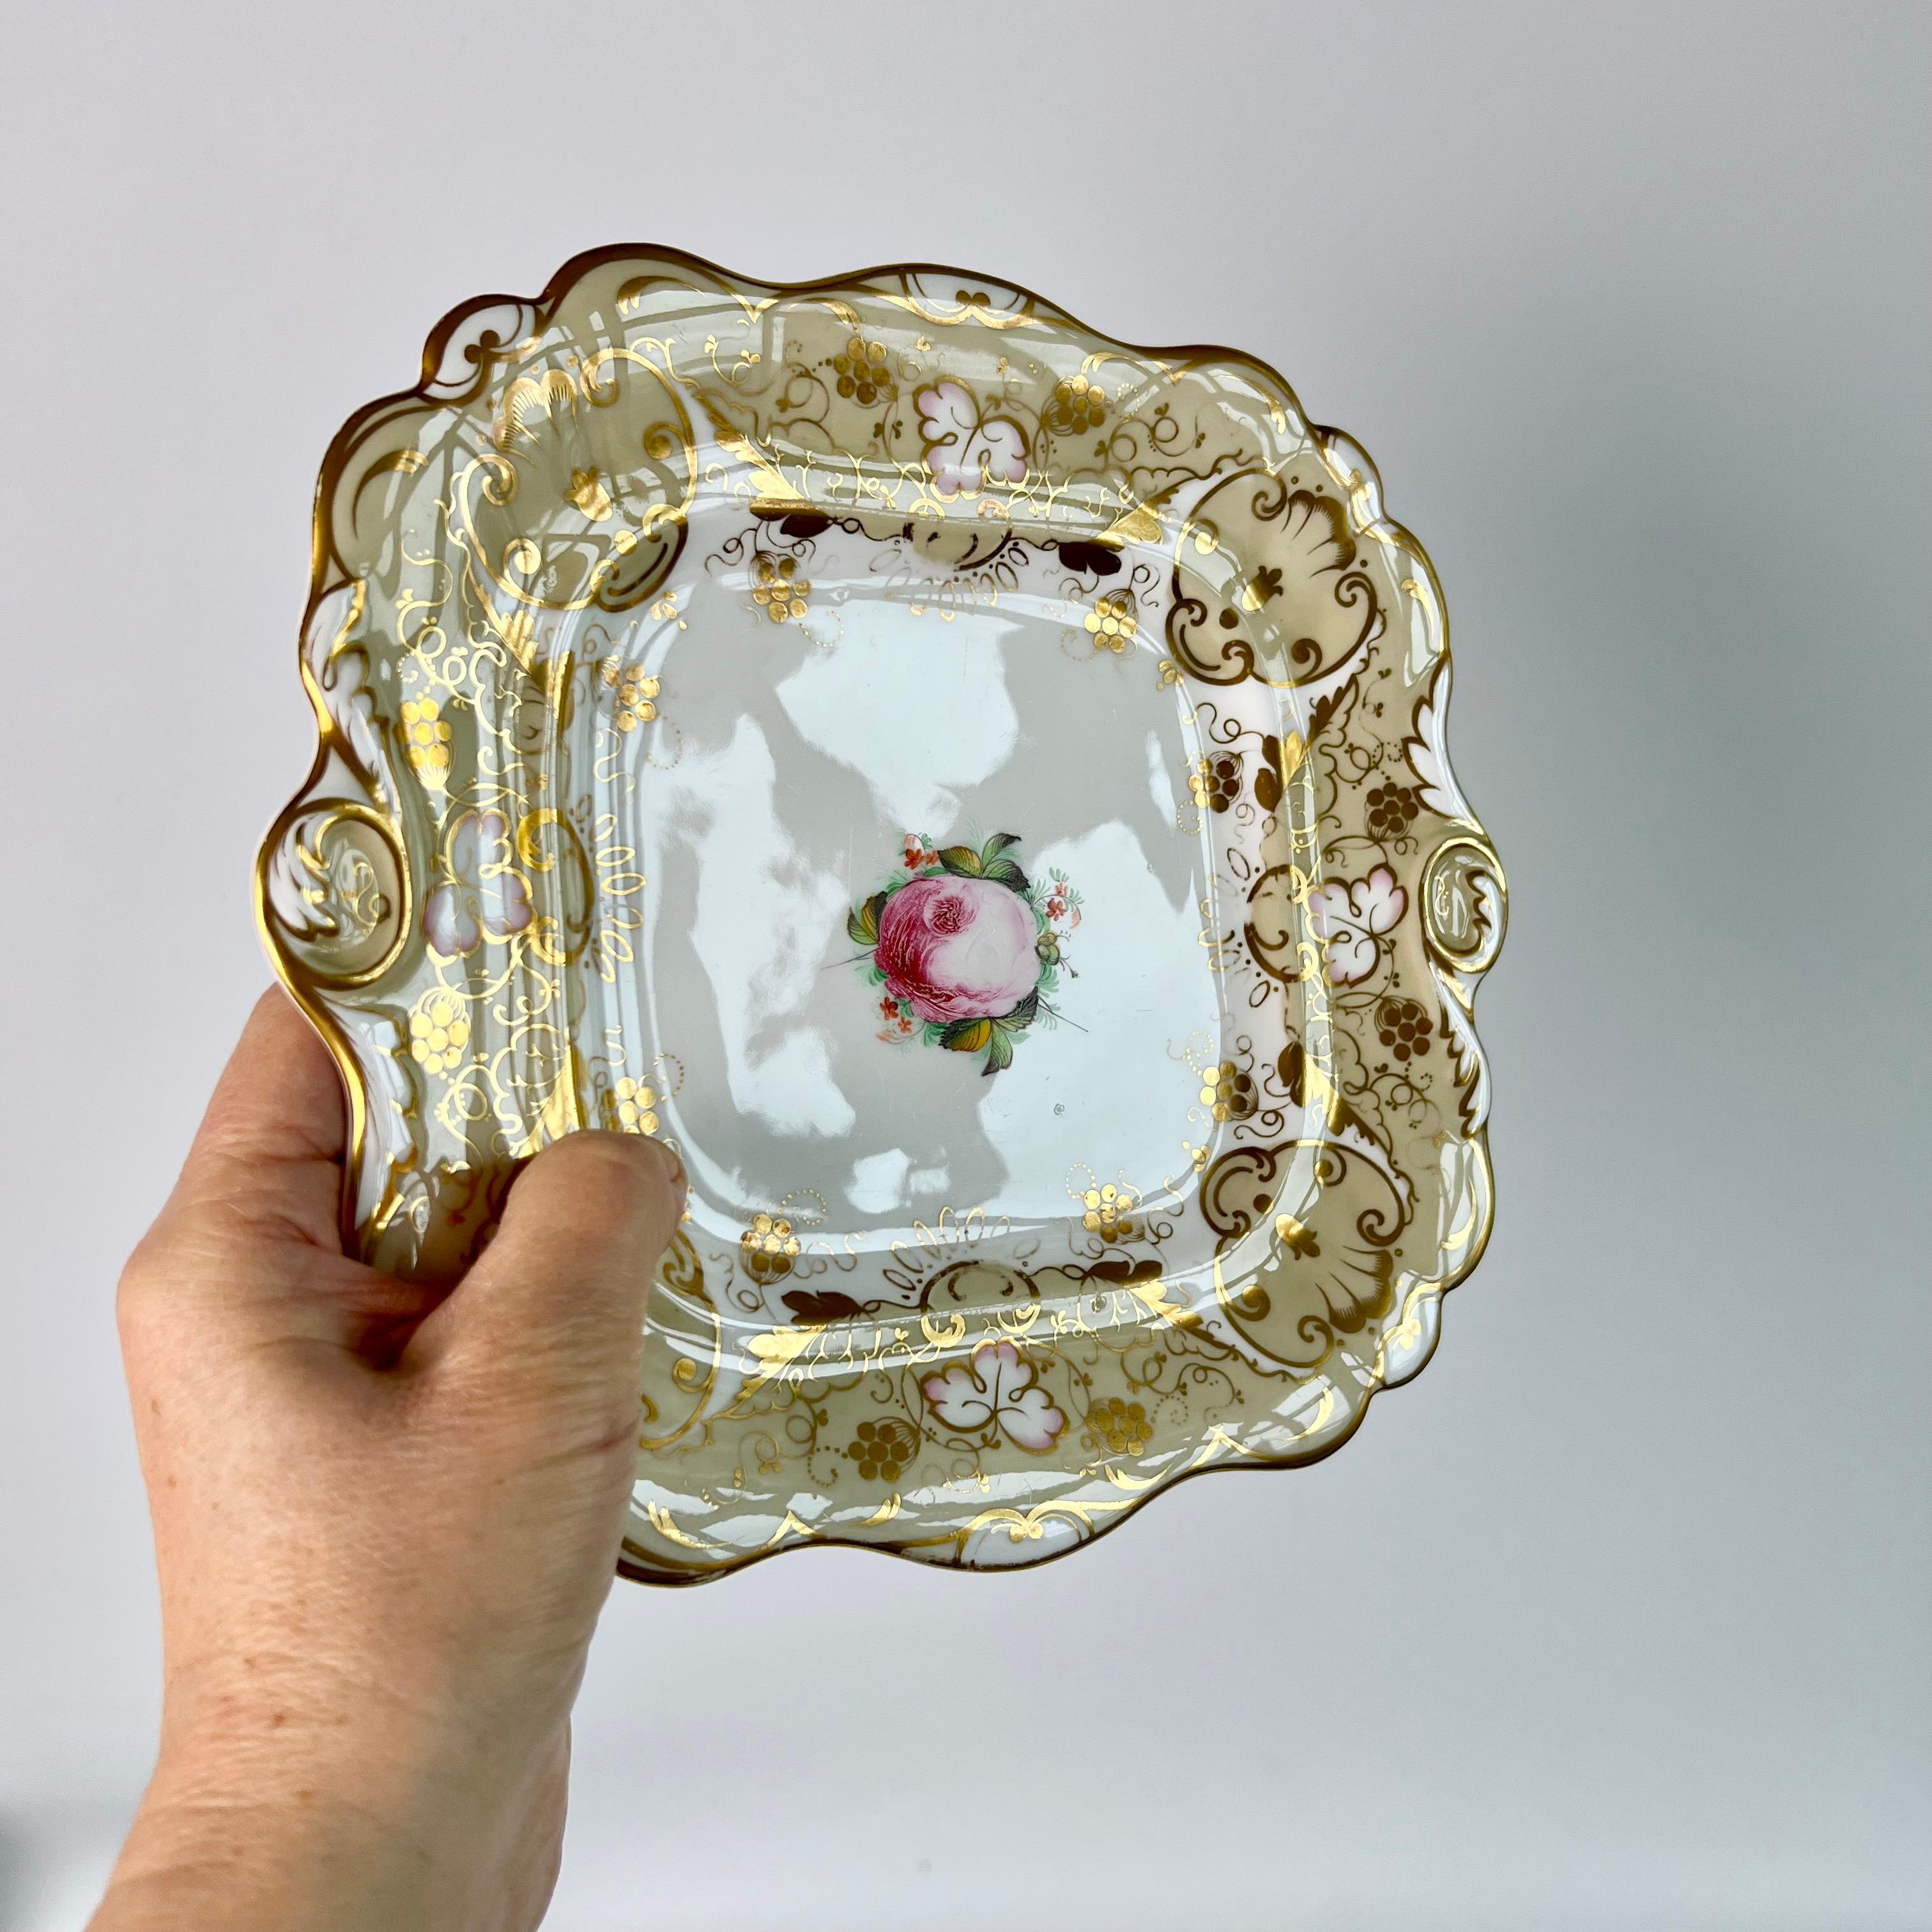 Il s'agit d'une belle assiette à gâteau datant d'environ 1830, fabriquée par Hilditch. L'assiette a un fond beige chaud avec un motif doré élaboré, et une belle rose des choux rose au centre.

La poterie Hilditch n'a fonctionné sous le nom de